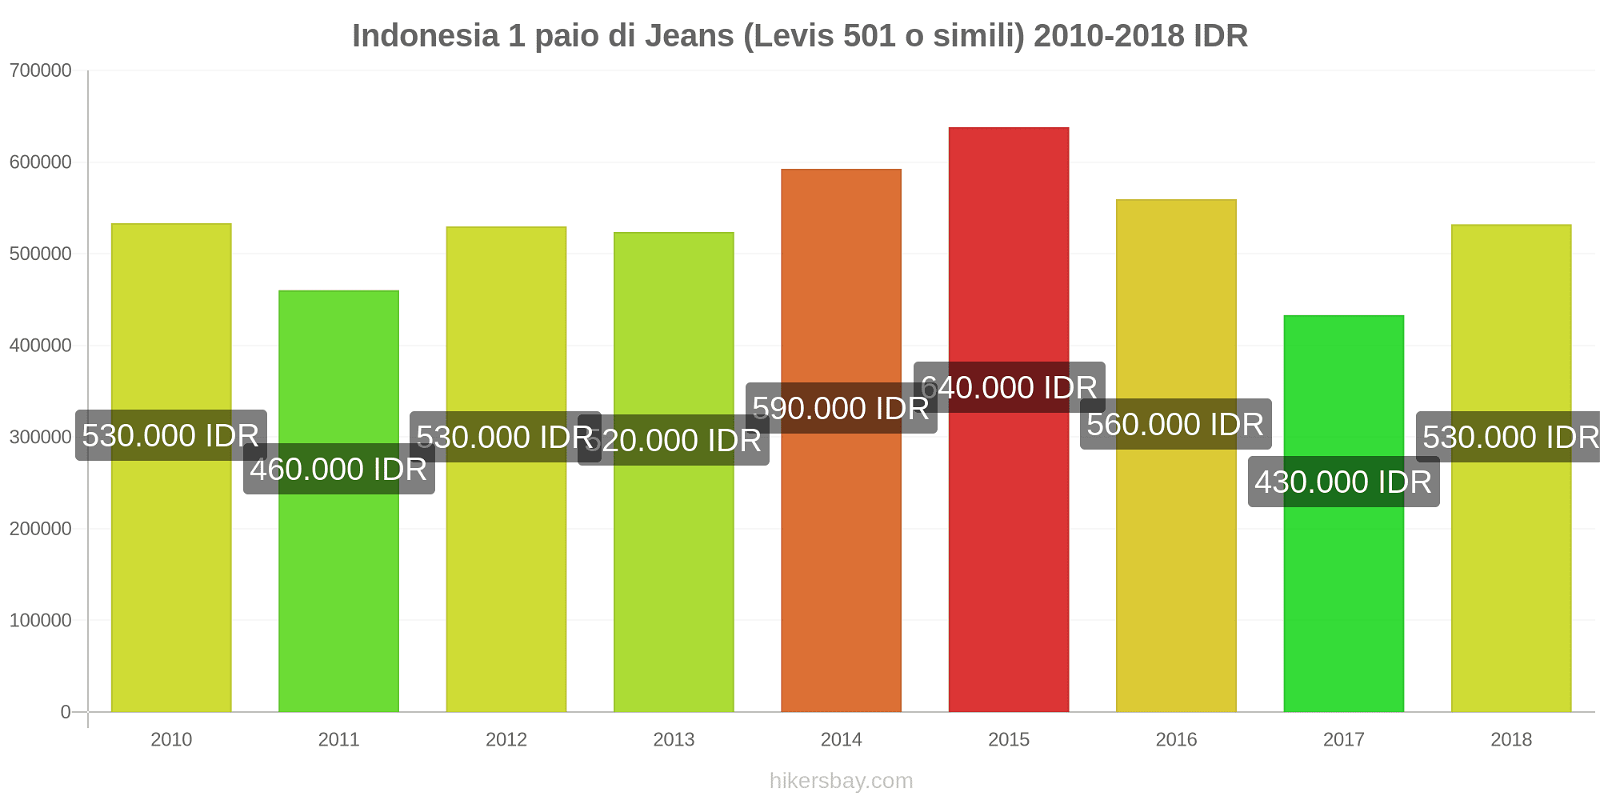 Indonesia cambi di prezzo 1 paio di jeans (Levis 501 o simili) hikersbay.com